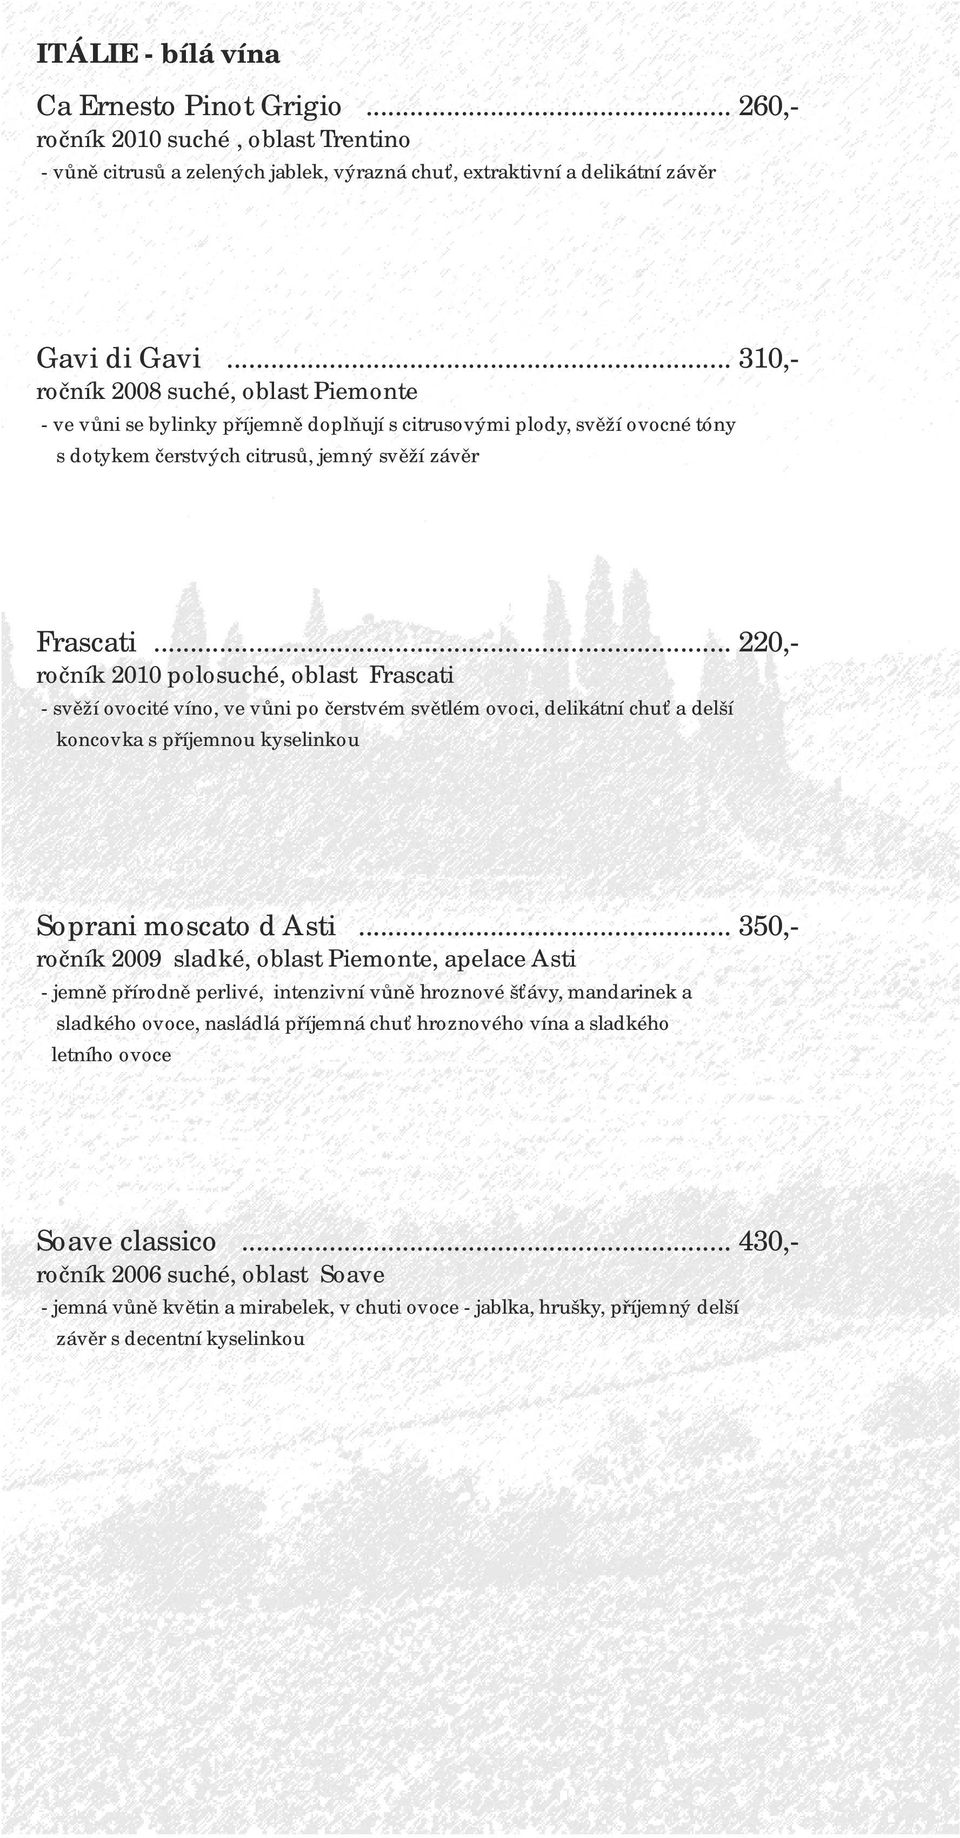 .. 220,- ročník 2010 polosuché, oblast Frascati - svěží ovocité víno, ve vůni po čerstvém světlém ovoci, delikátní chuť a delší koncovka s příjemnou kyselinkou Soprani moscato d Asti.